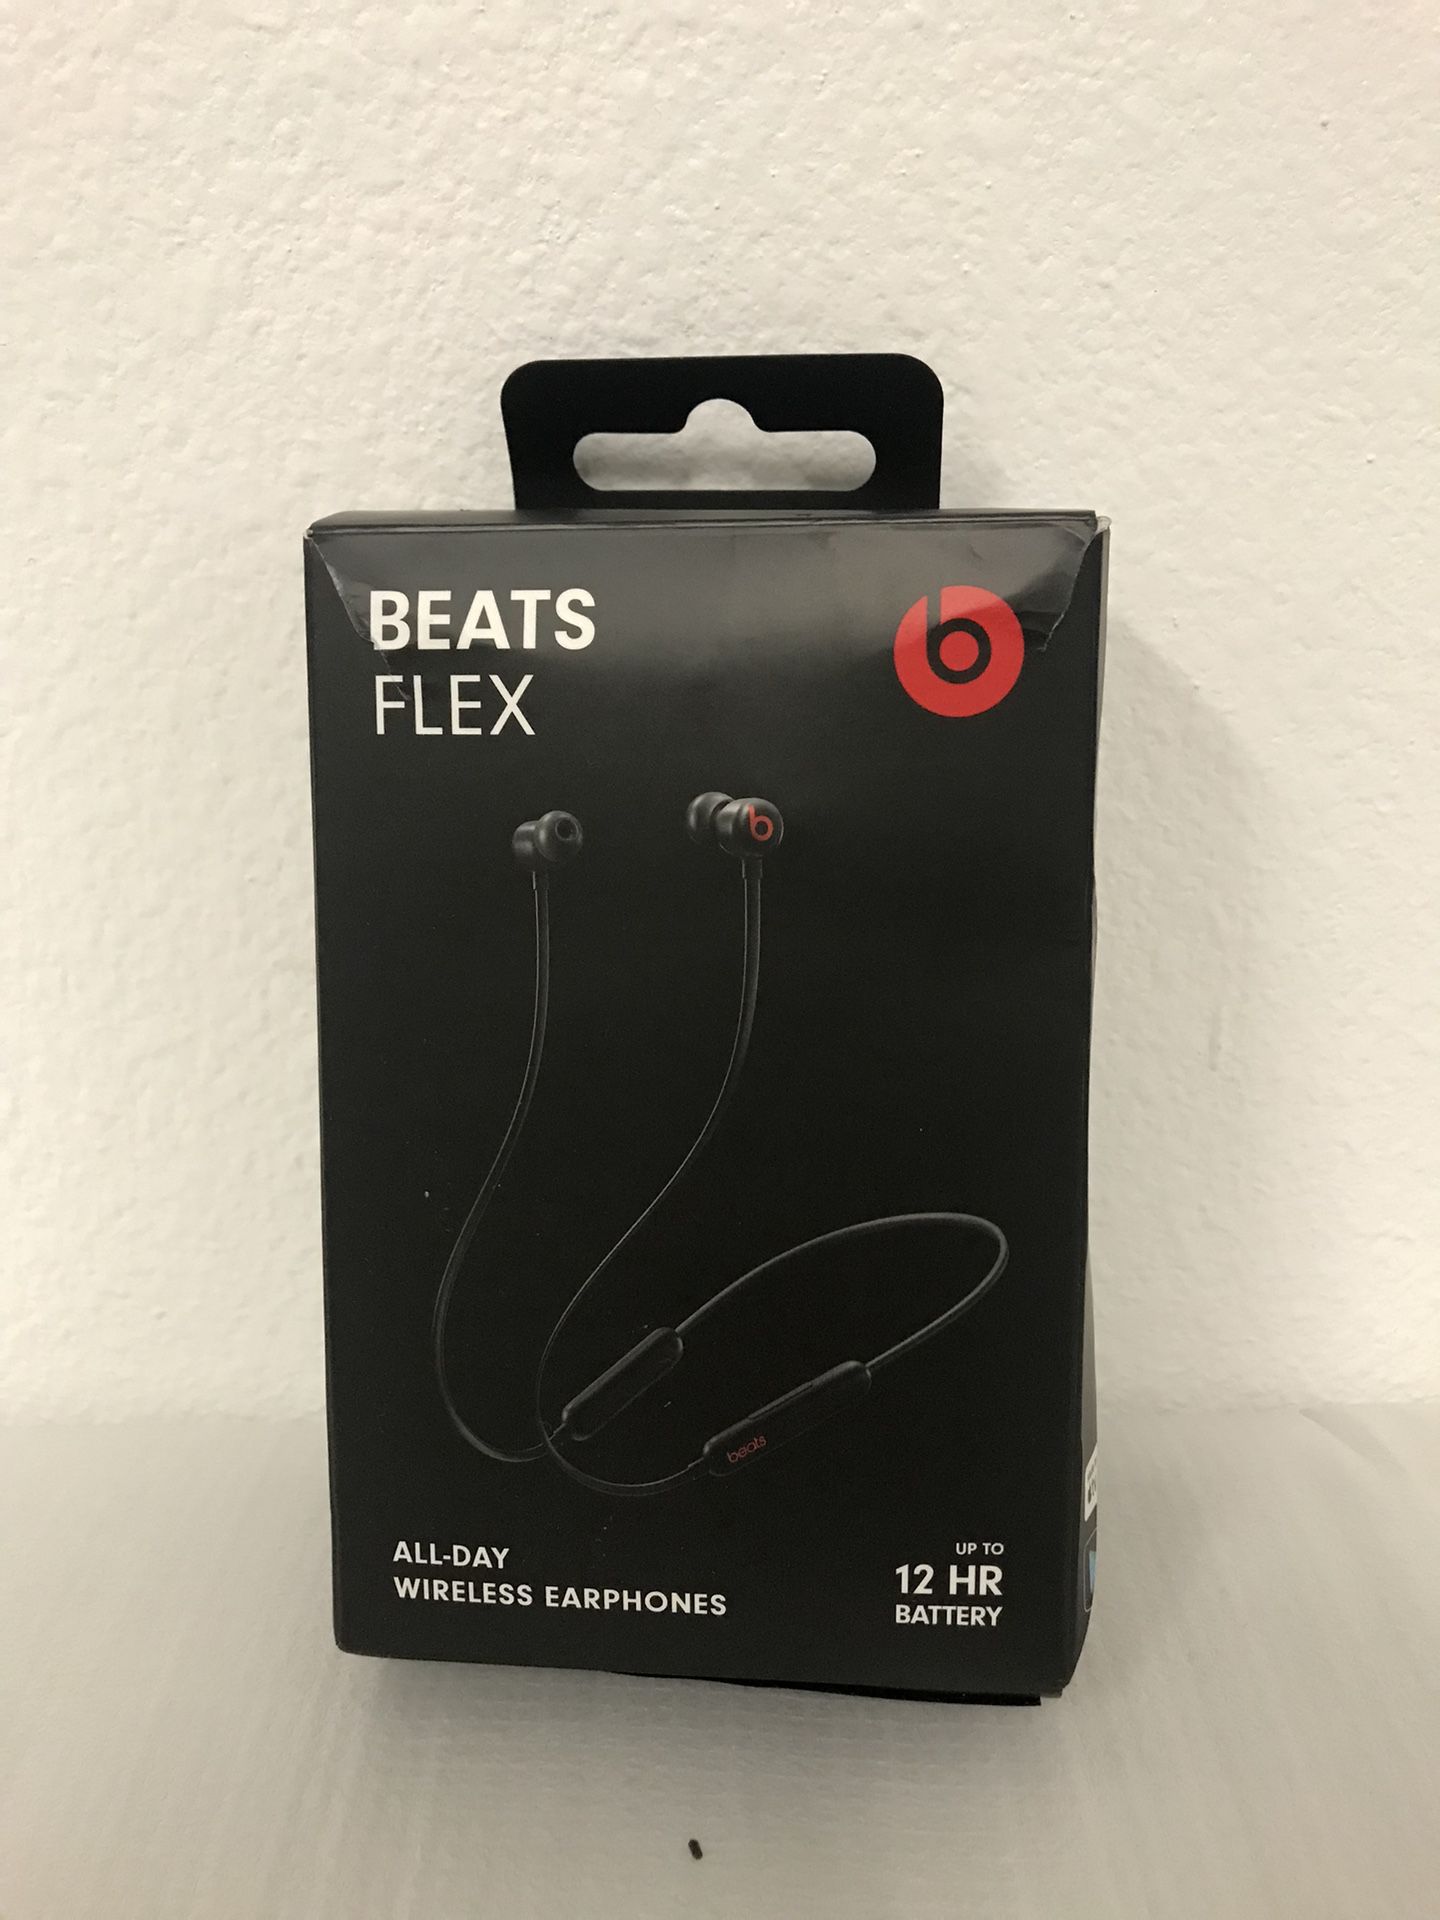 Beats by Dr. Dre - Beats Flex Wireless Earphones - Black
